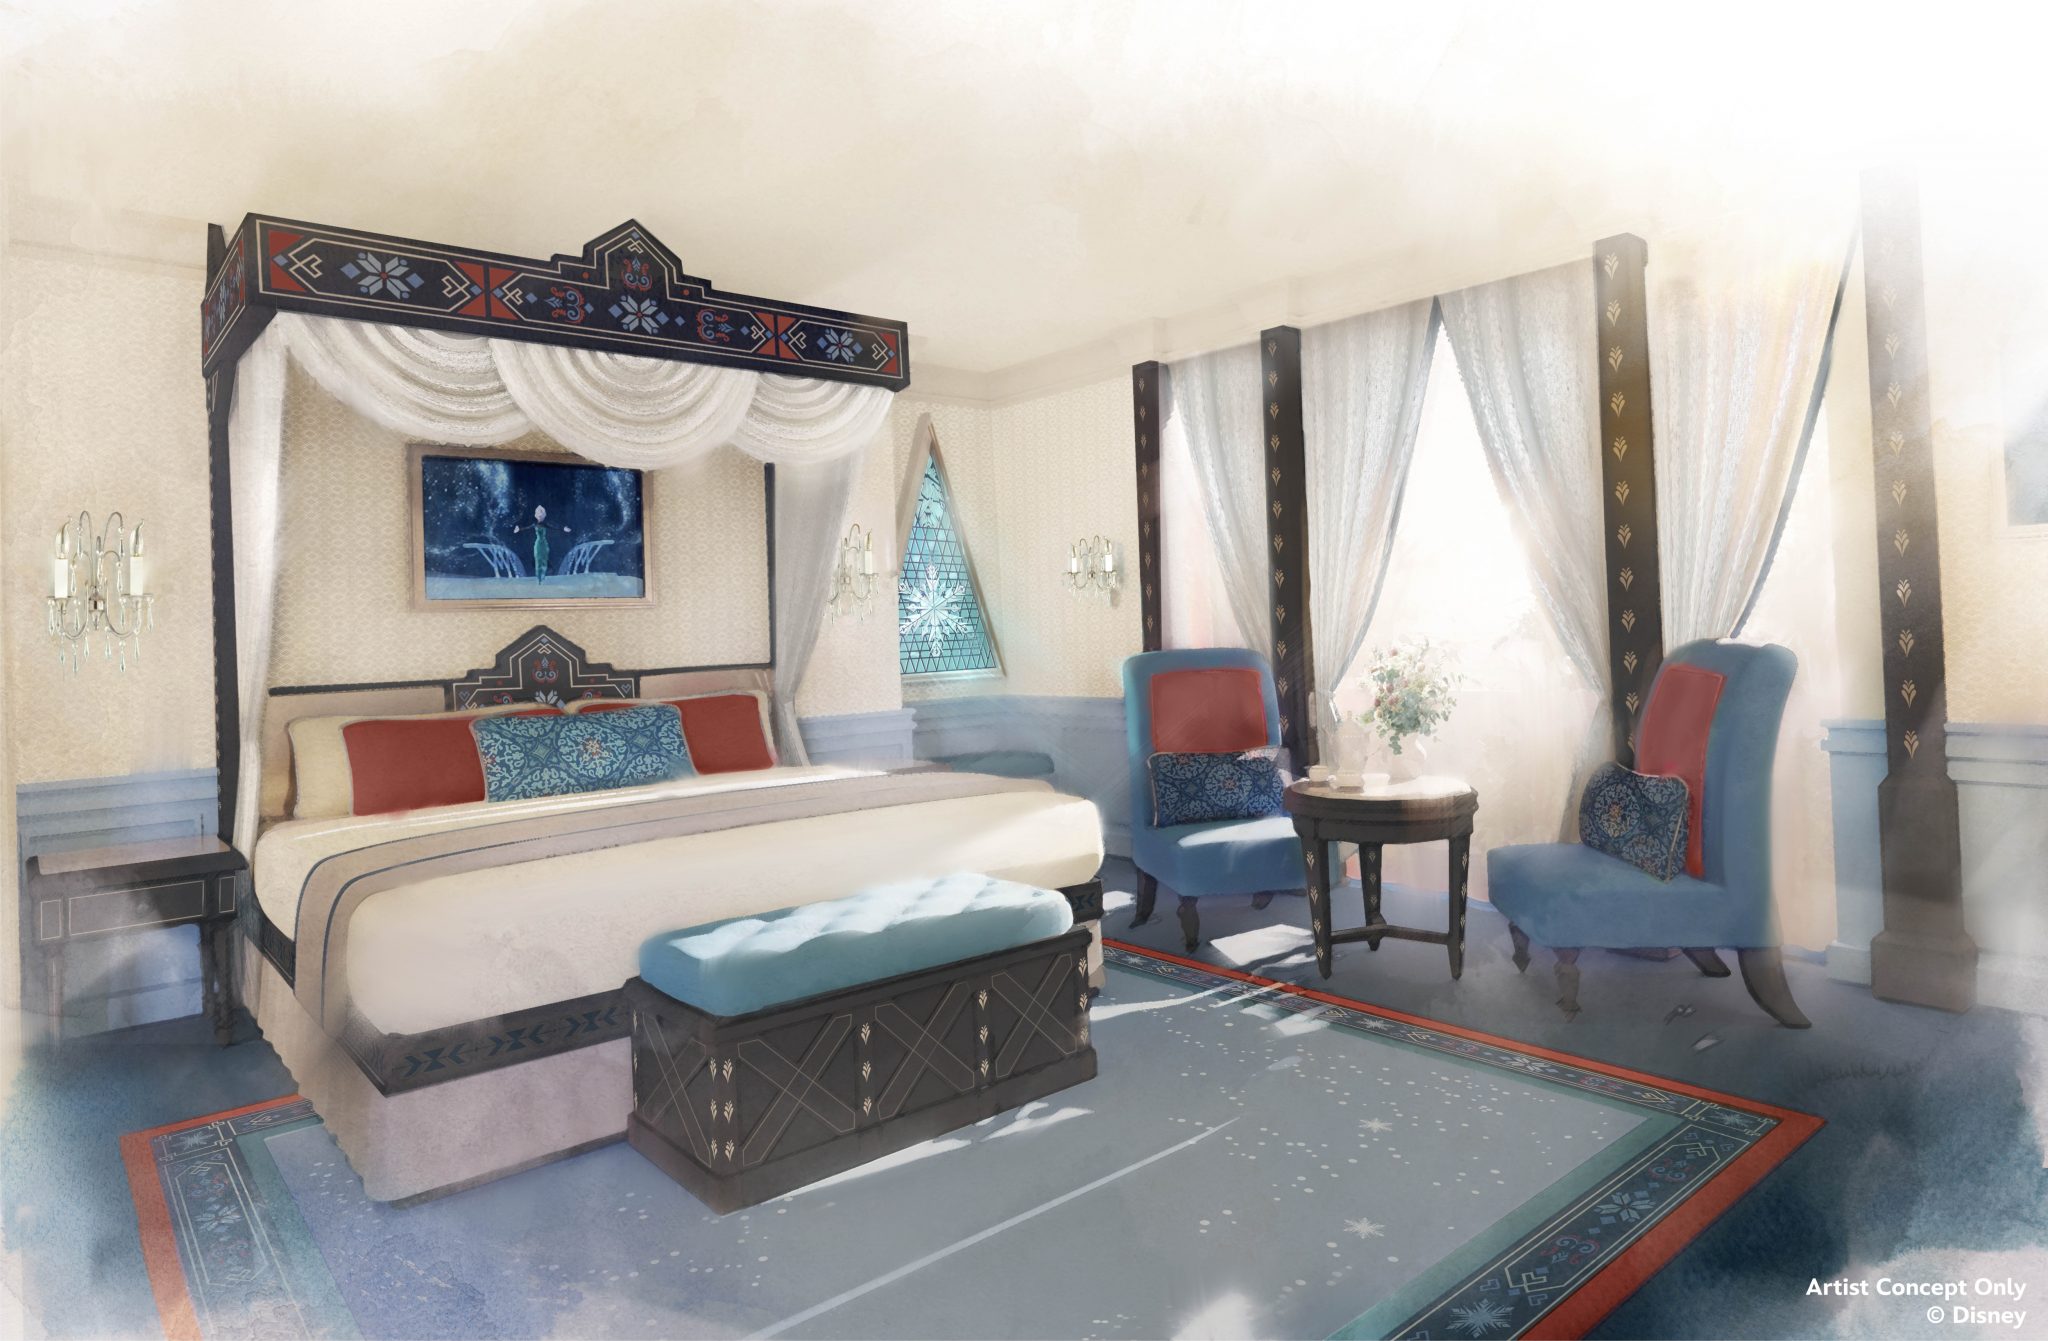 Arte conceitual mostra quarto inspirado em “Frozen” para hotel Disney